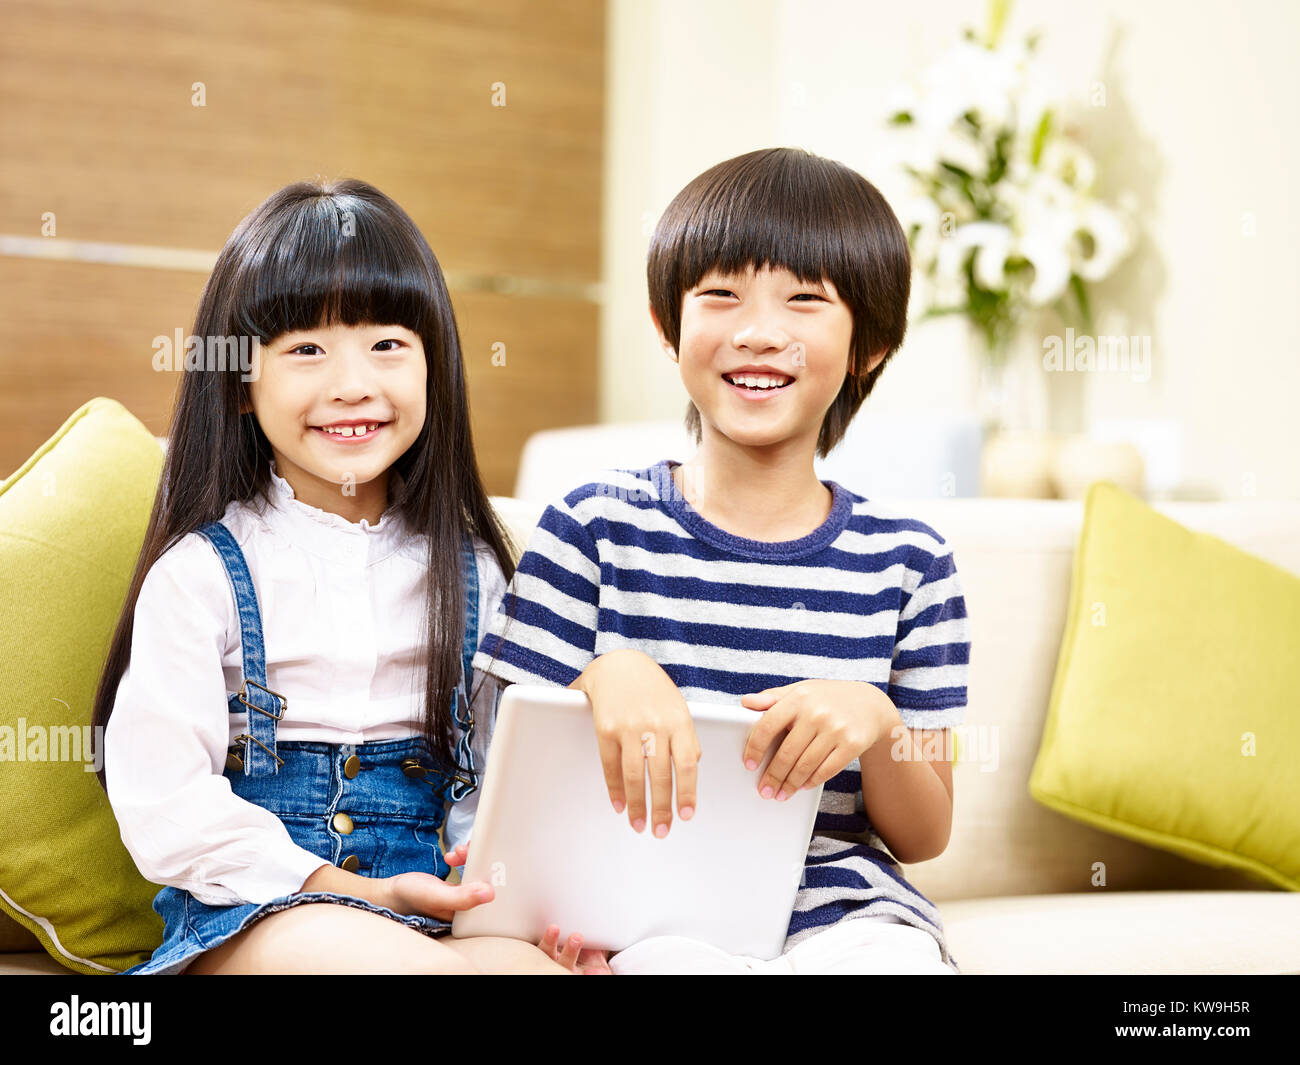 Deux enfants asiatiques mignon petit garçon et petite fille assise sur la table holding digital tablet smiling at camera Banque D'Images